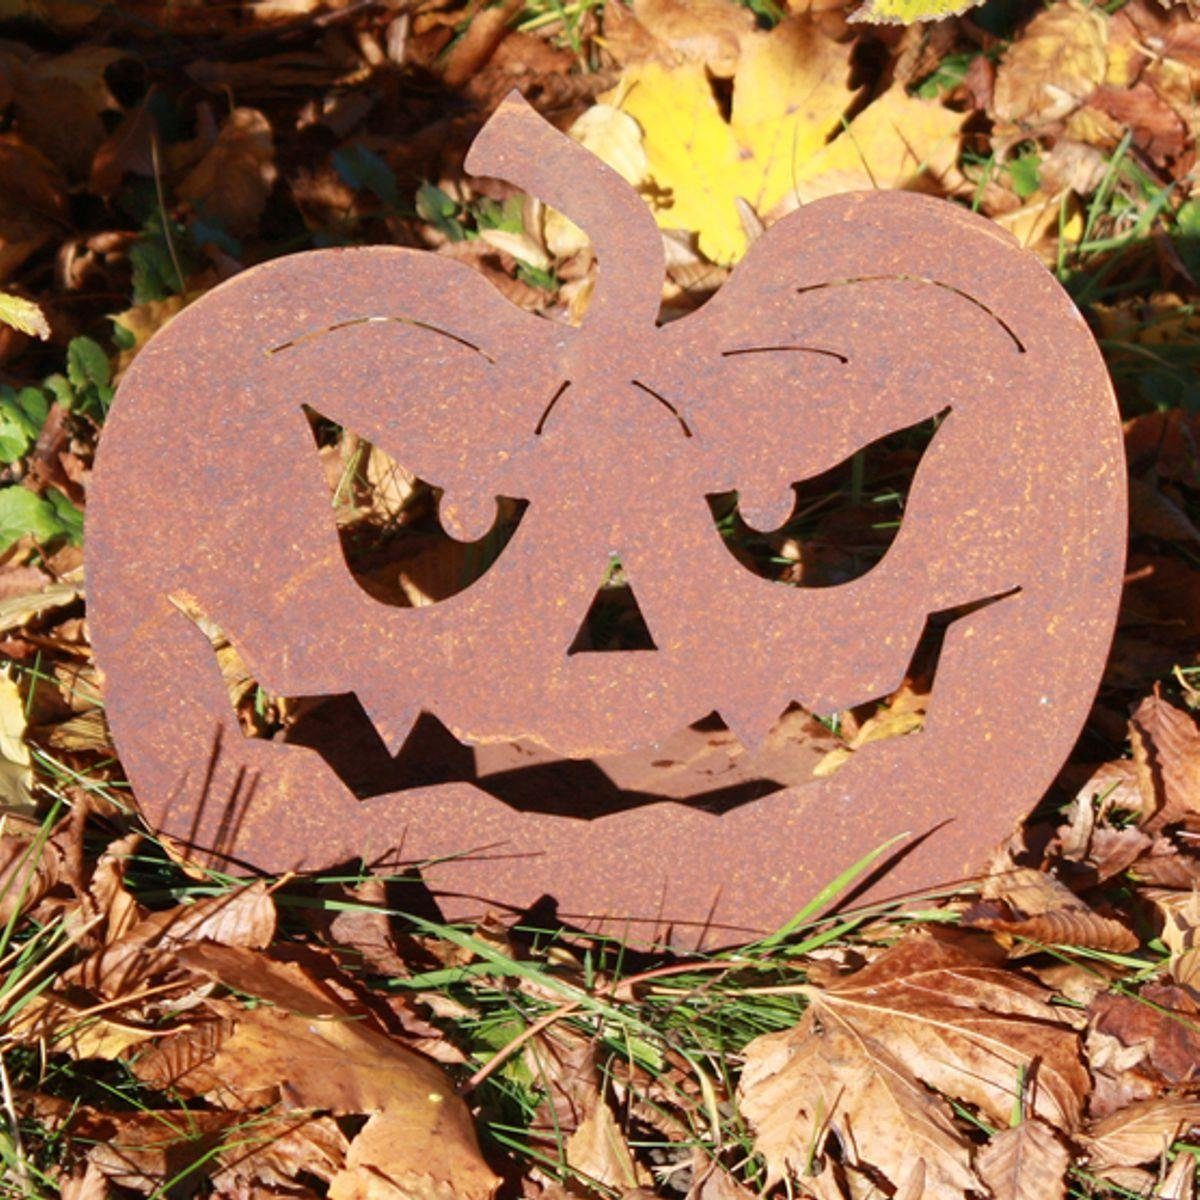 ca. 440s (Stück) 30 cm H, auf Platte Gartenfigur Rost-Halloween-Kürbis 440s